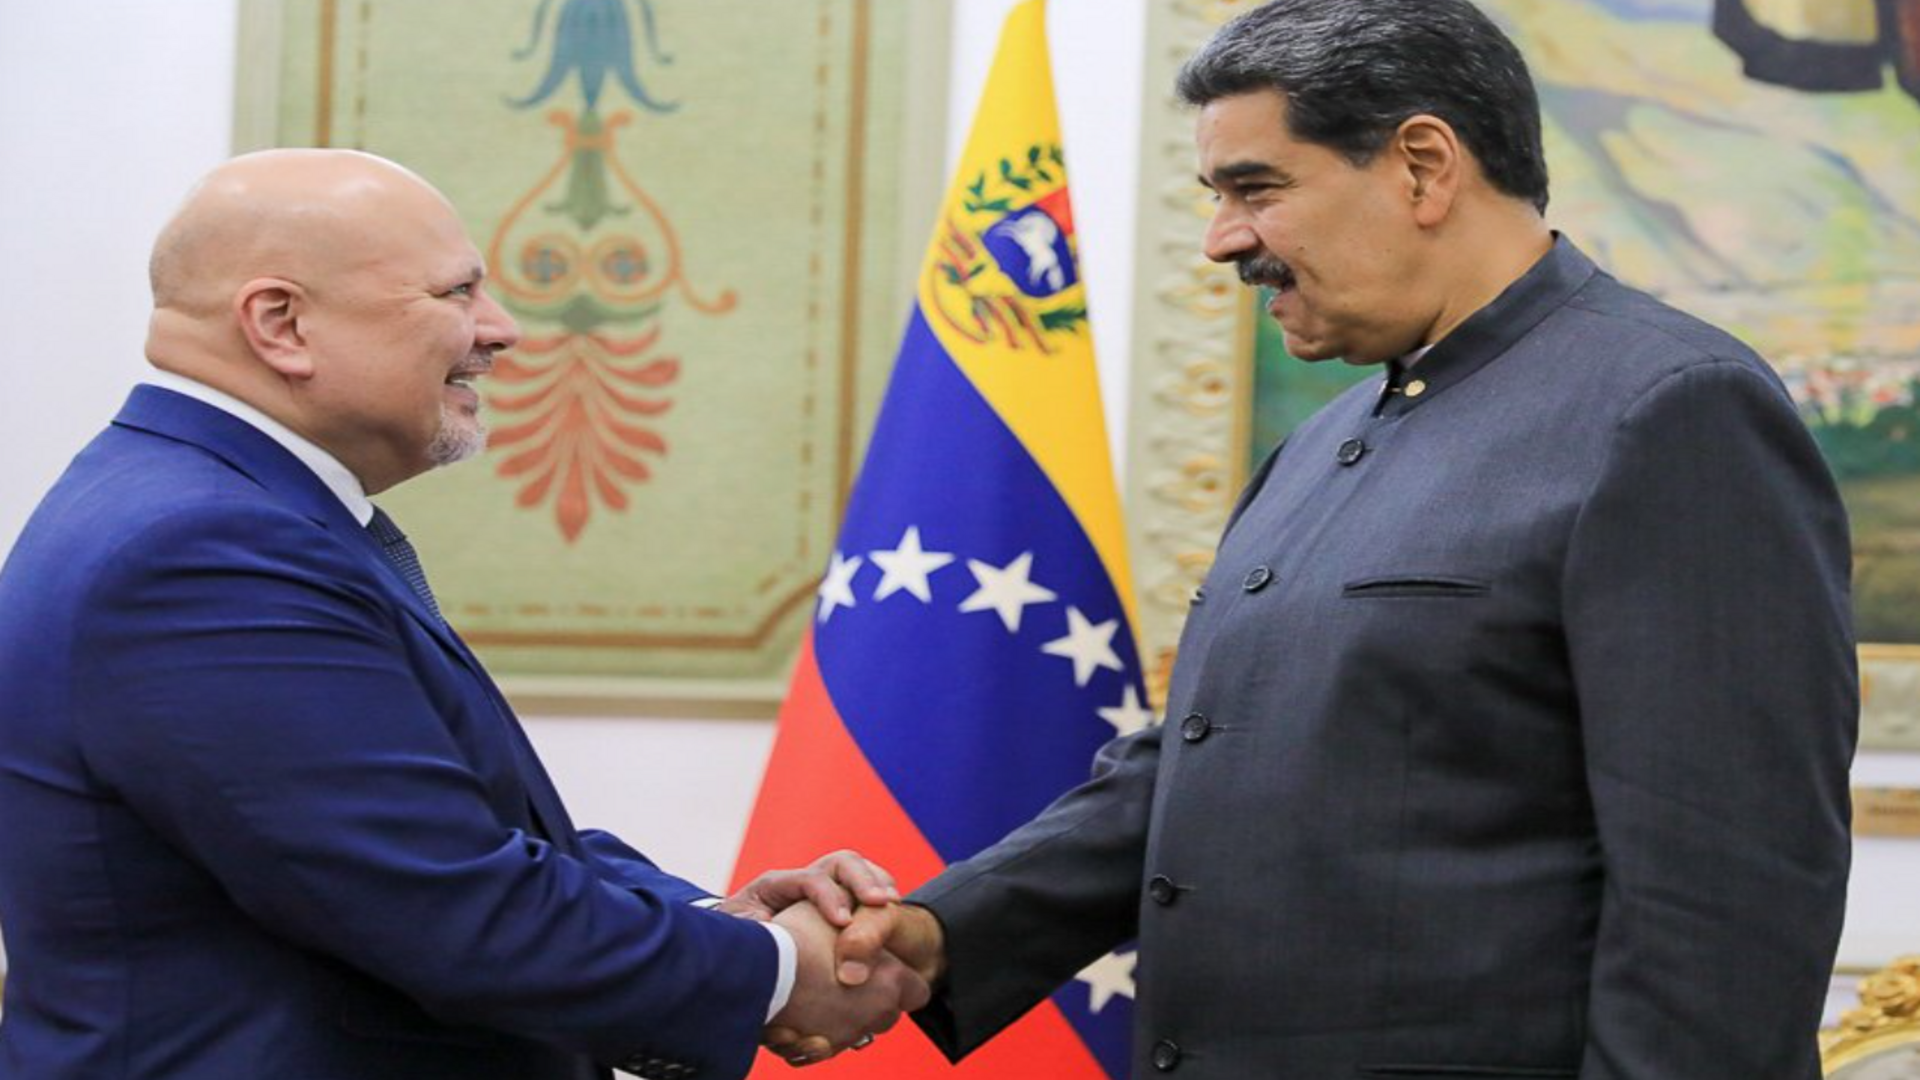 El fiscal de la CPI se reunió con el dictador Nicolás Maduro en medio de investigaciones por crímenes de lesa humanidad